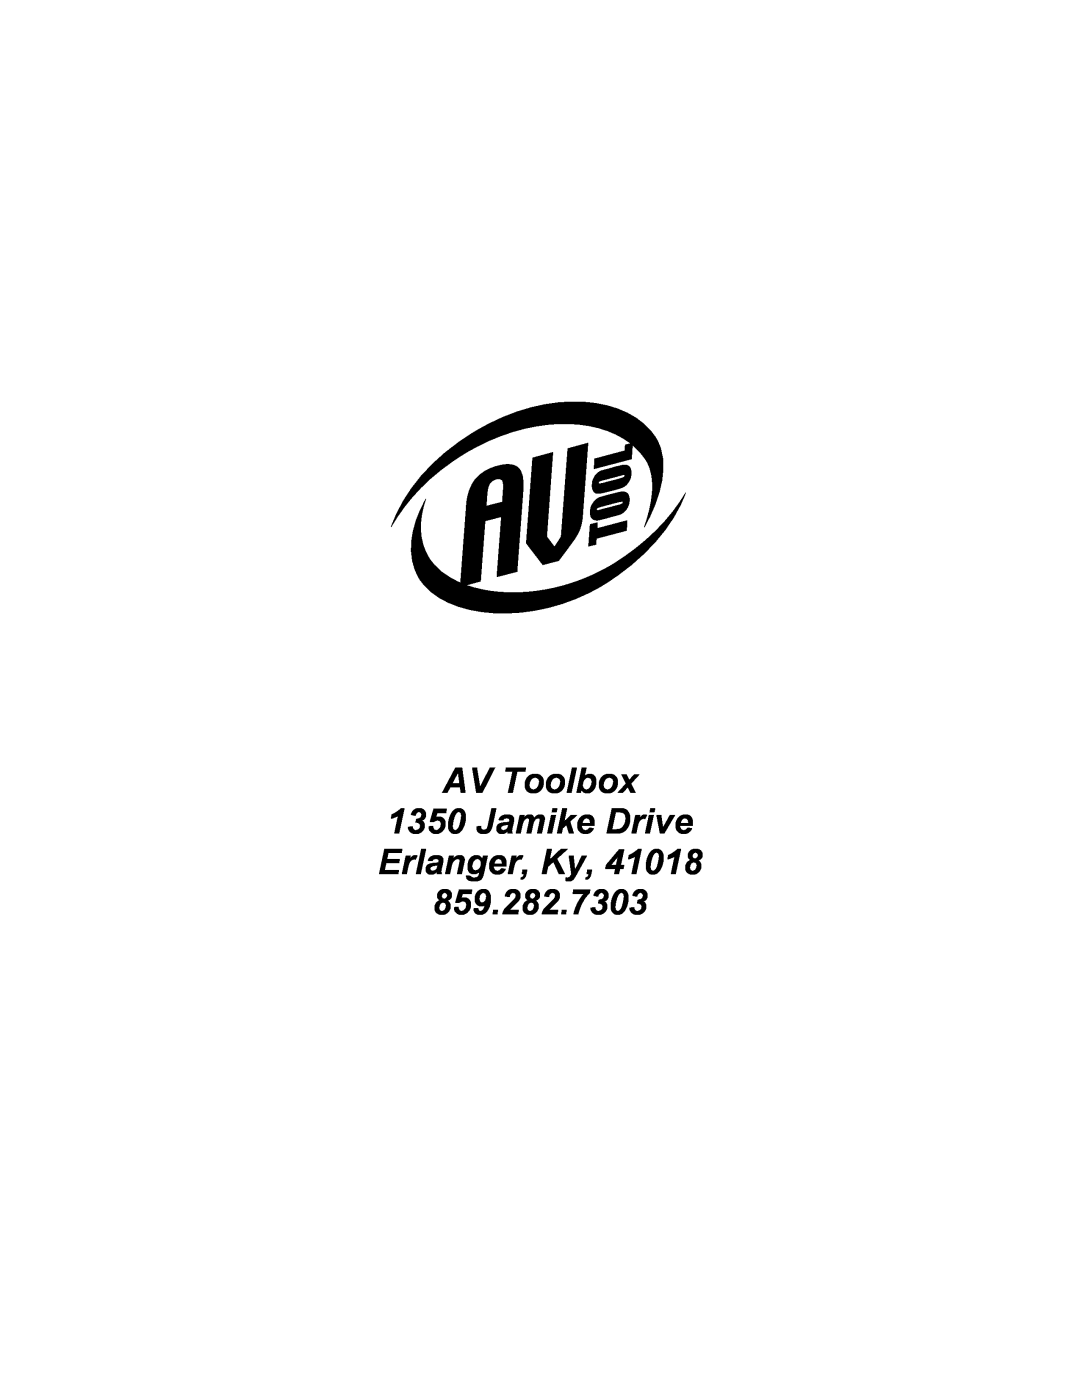 RCA AVT-2050 instruction manual AV Toolbox 1350 Jamike Drive Erlanger, Ky 859.282.7303 